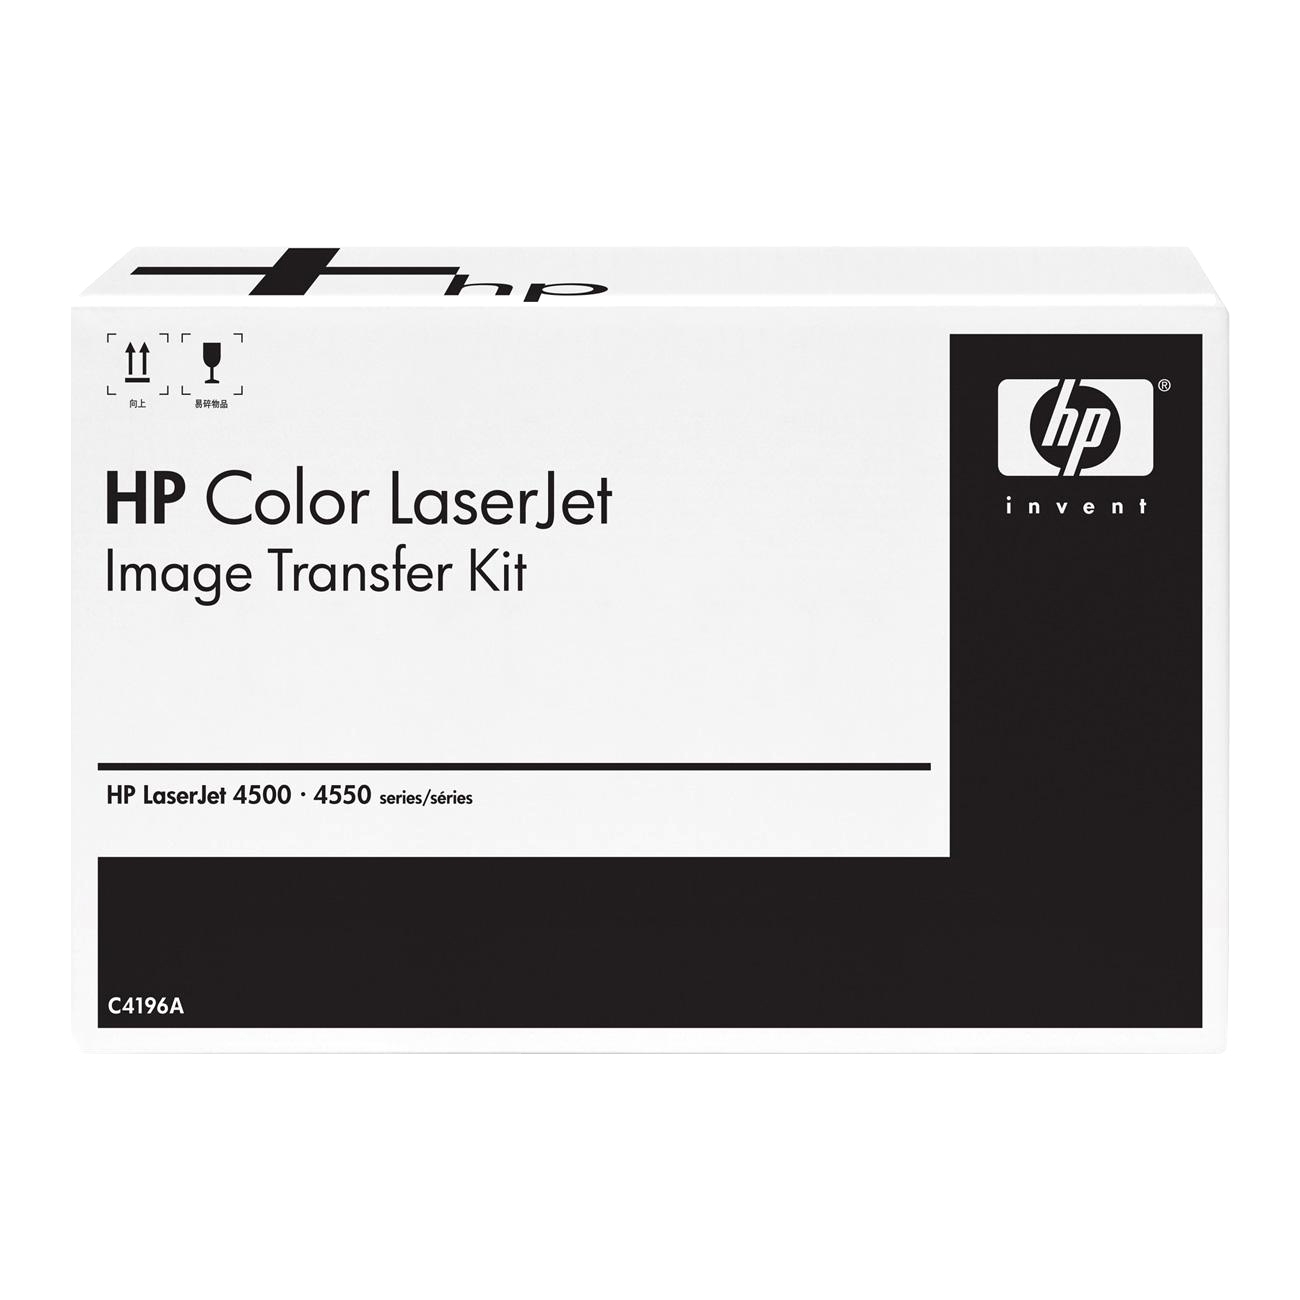    HP C9734B Color LaserJet Image Transfer Kit